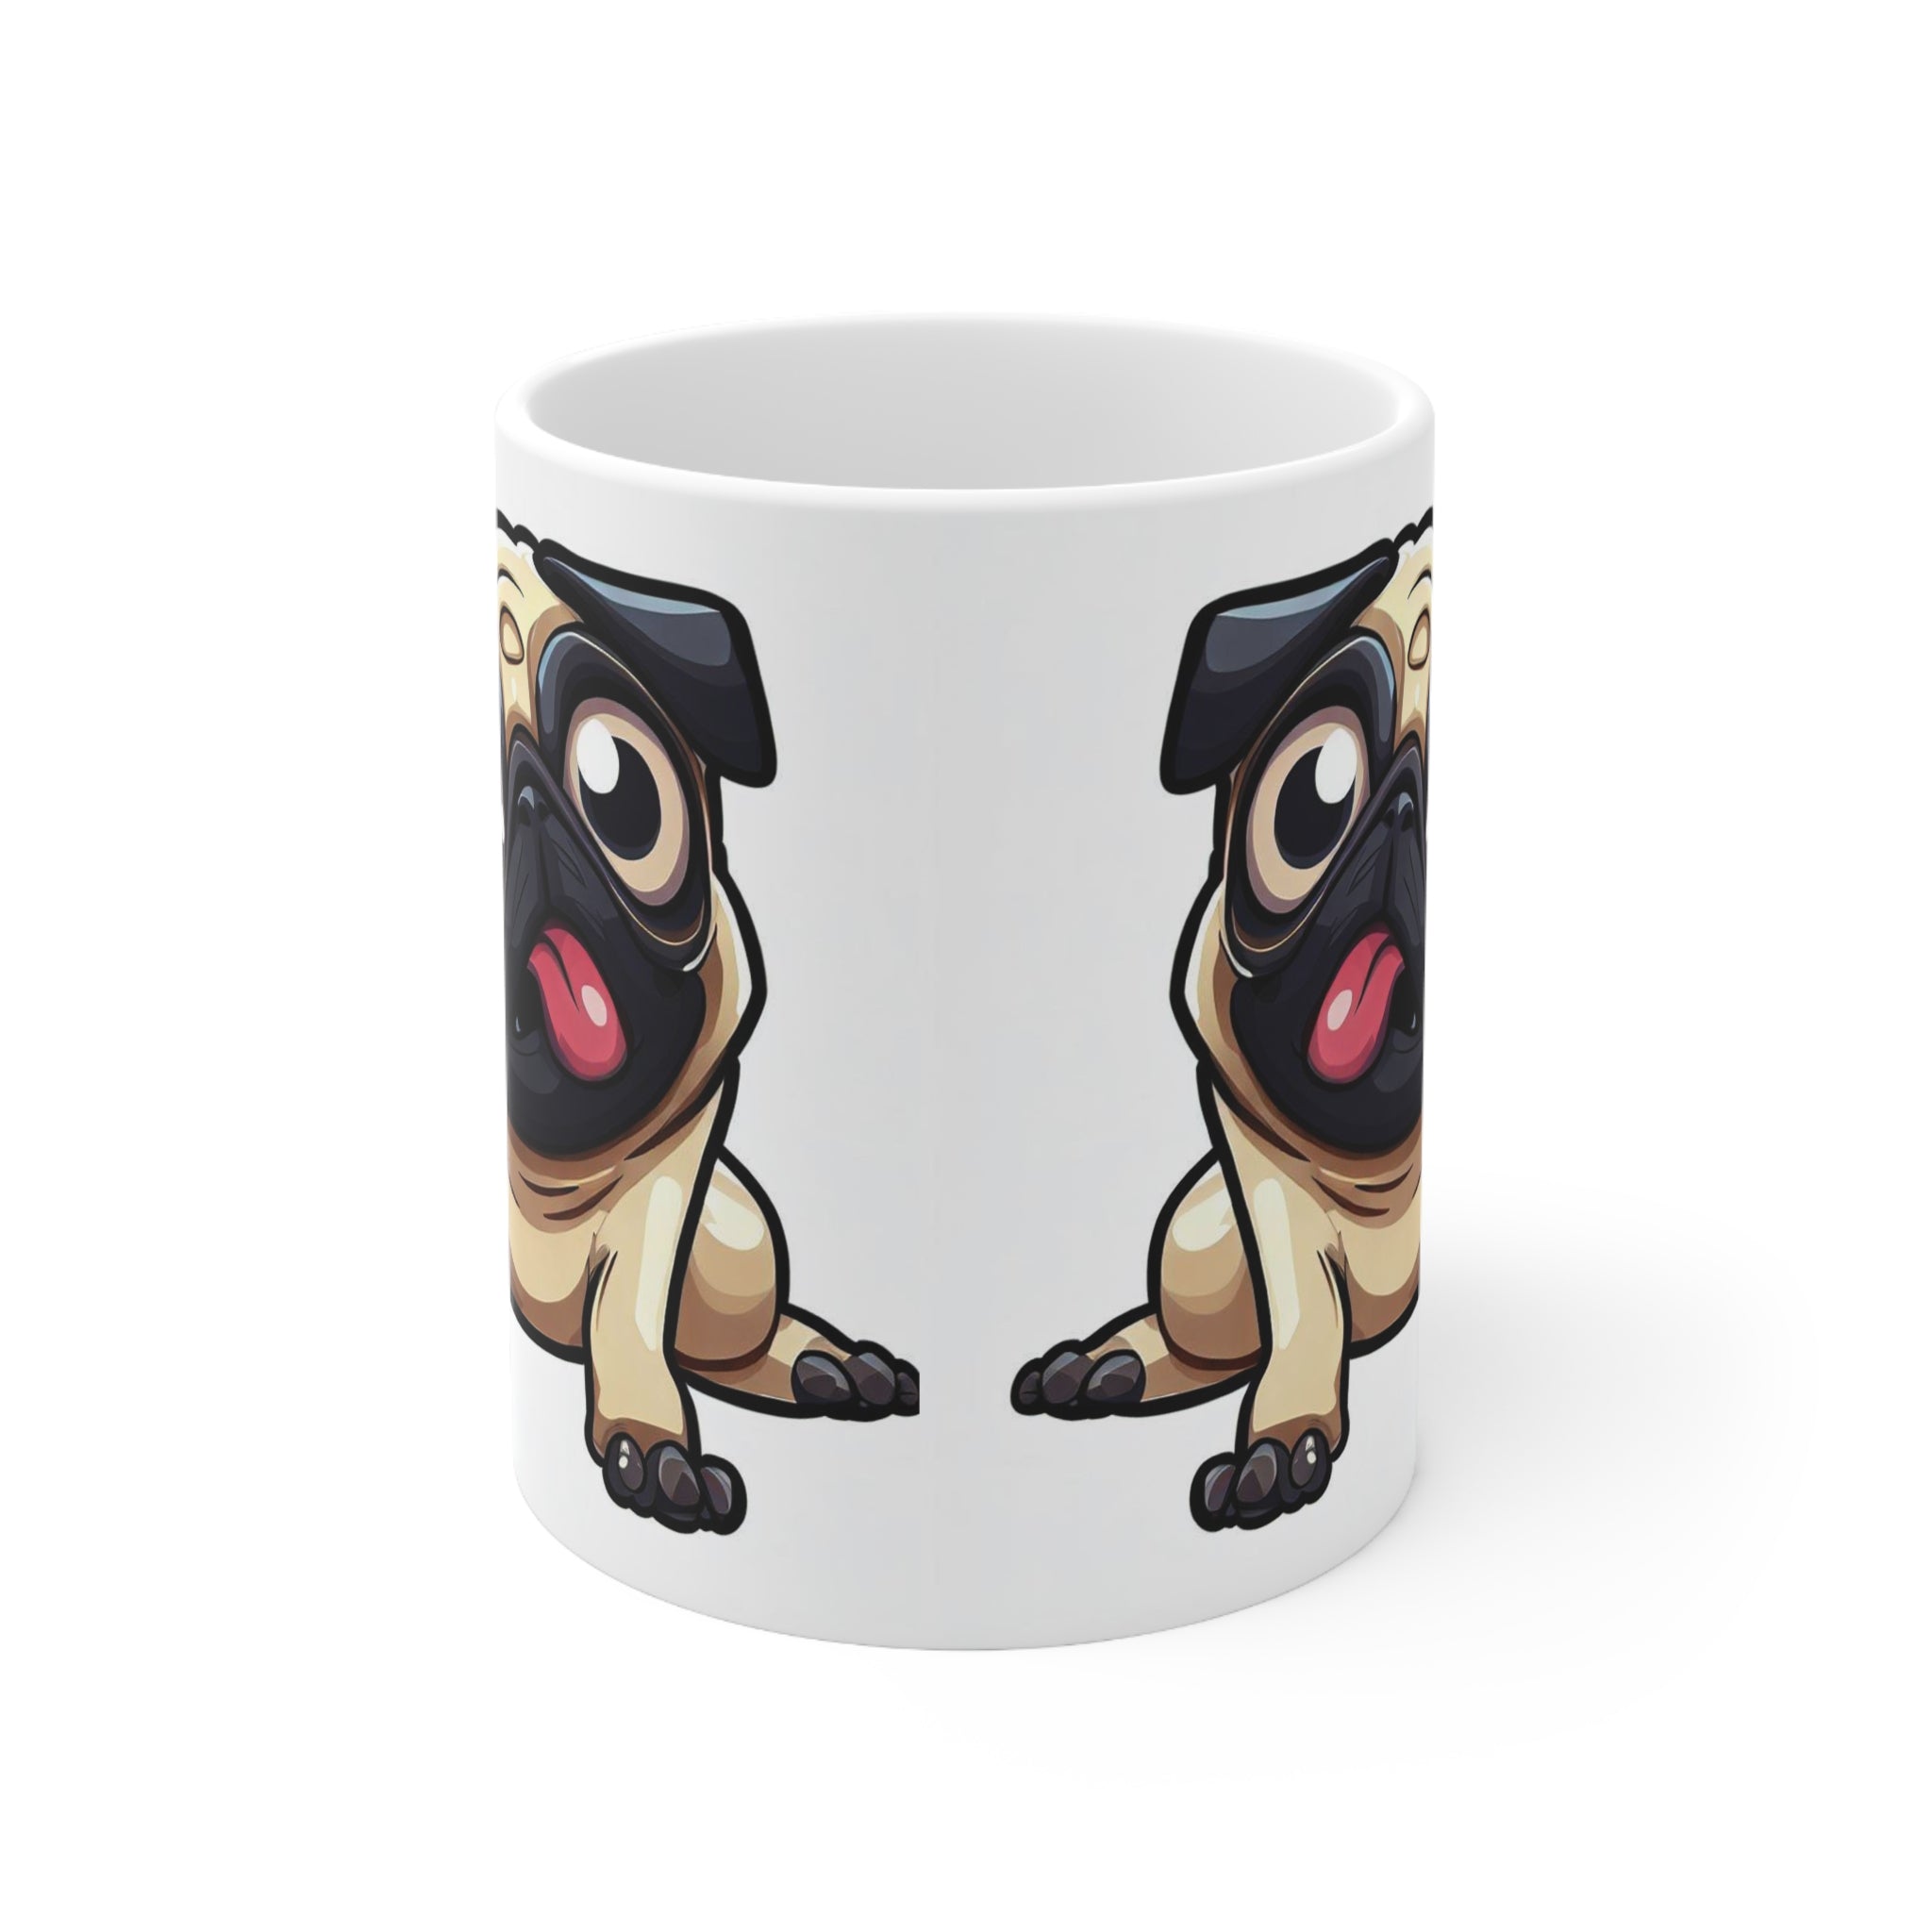 Ceramic Mug 11oz Adorable Pug